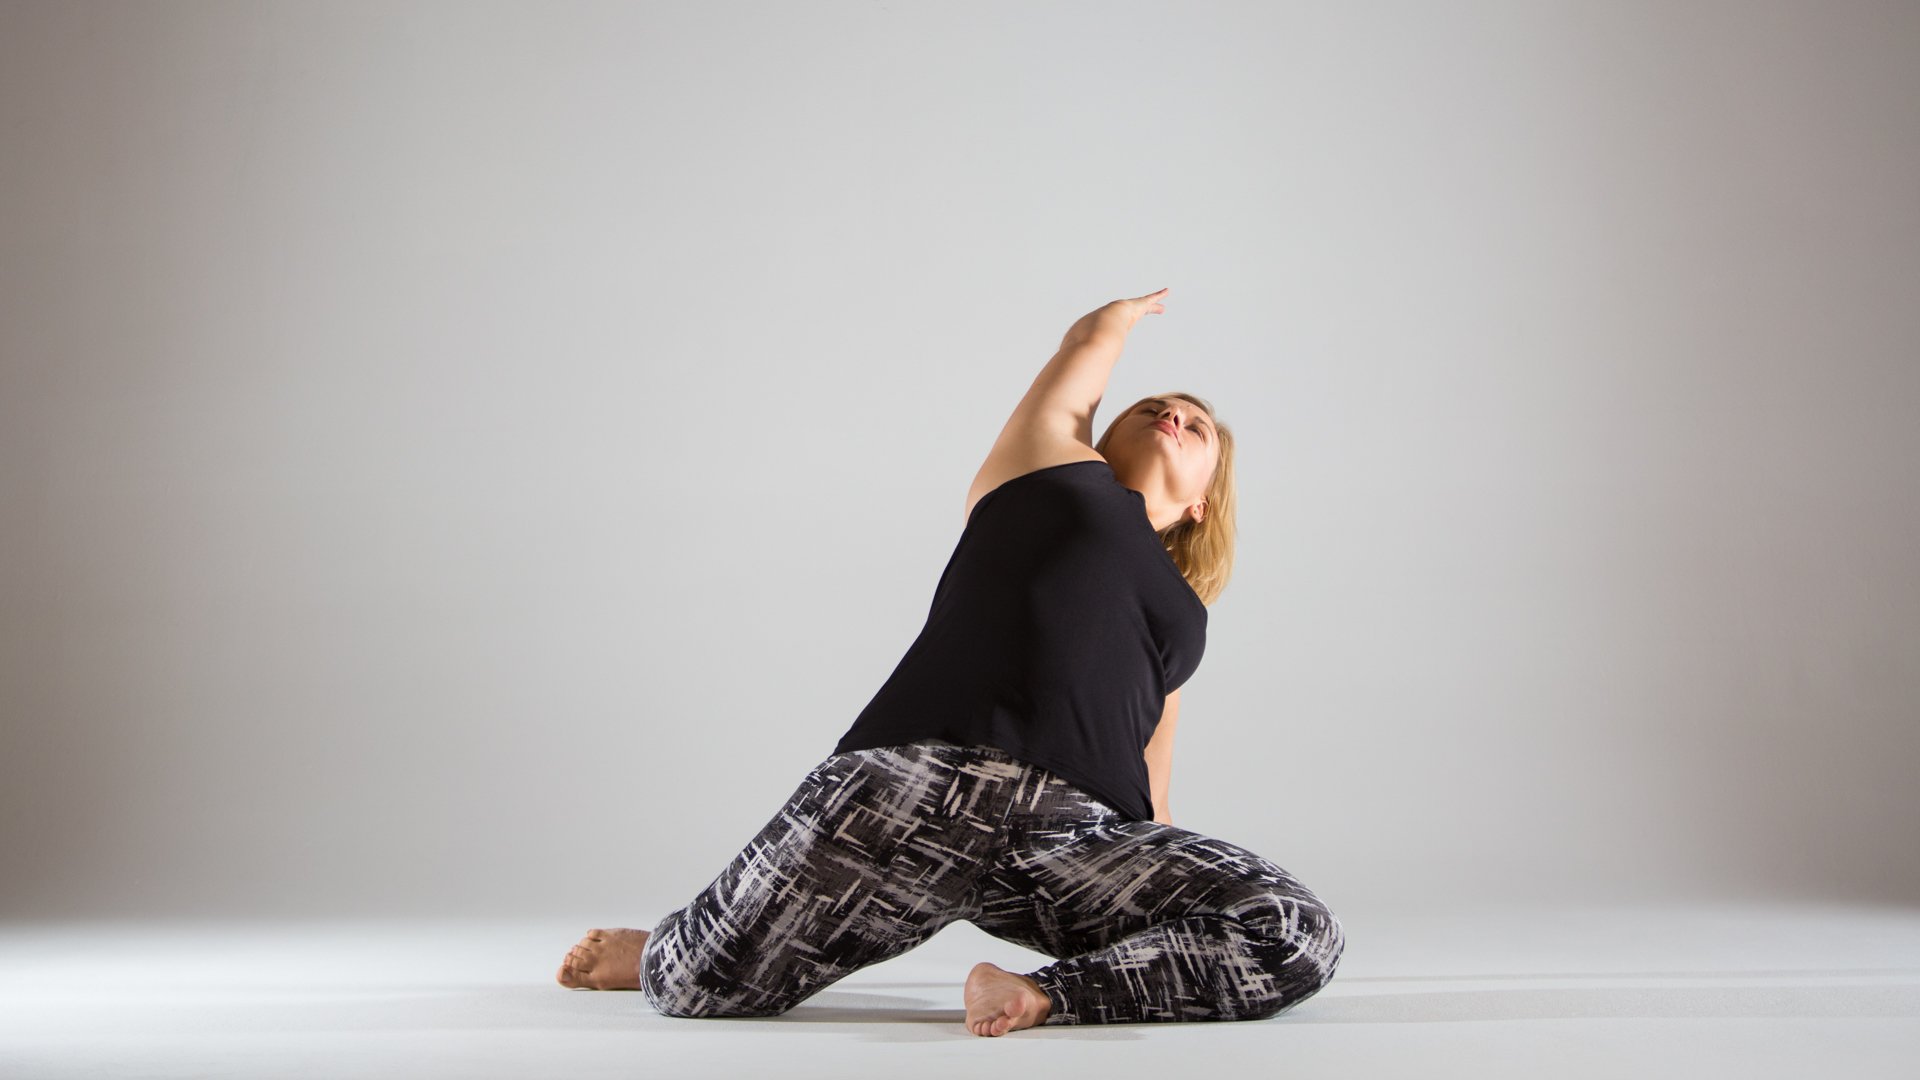 12 Yogis Share Their Favourite Yoga Pose - HealthifyMe